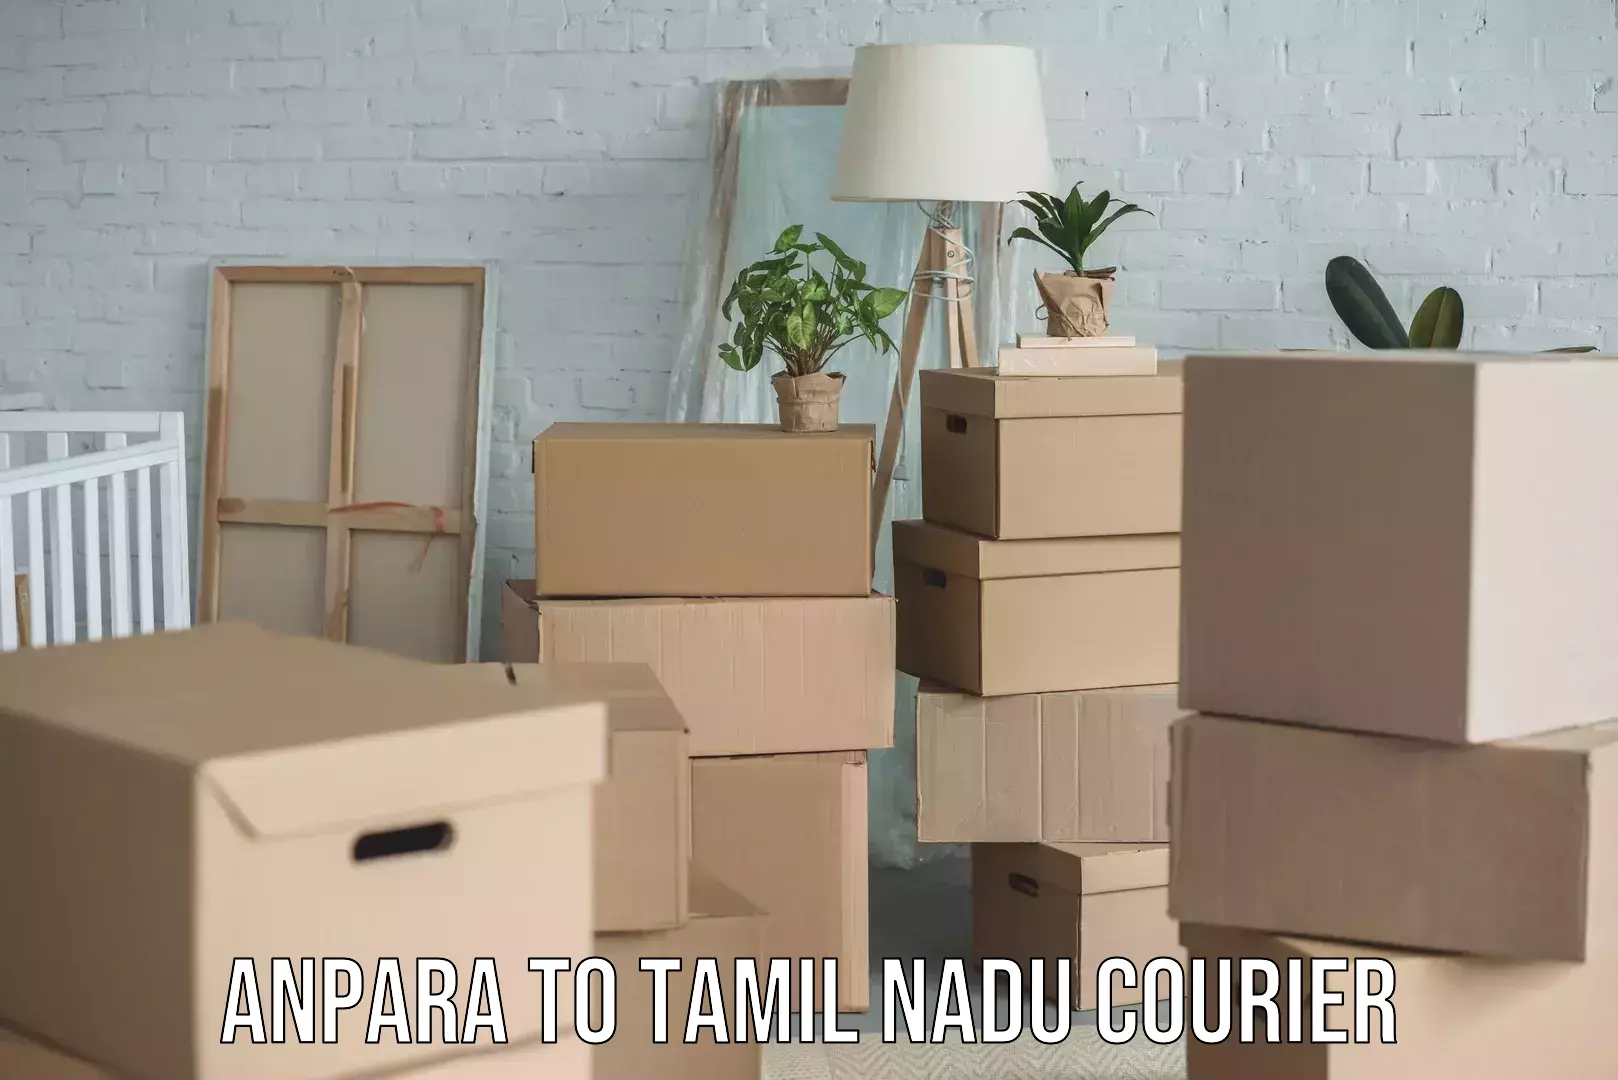 Courier membership Anpara to Tamil Nadu